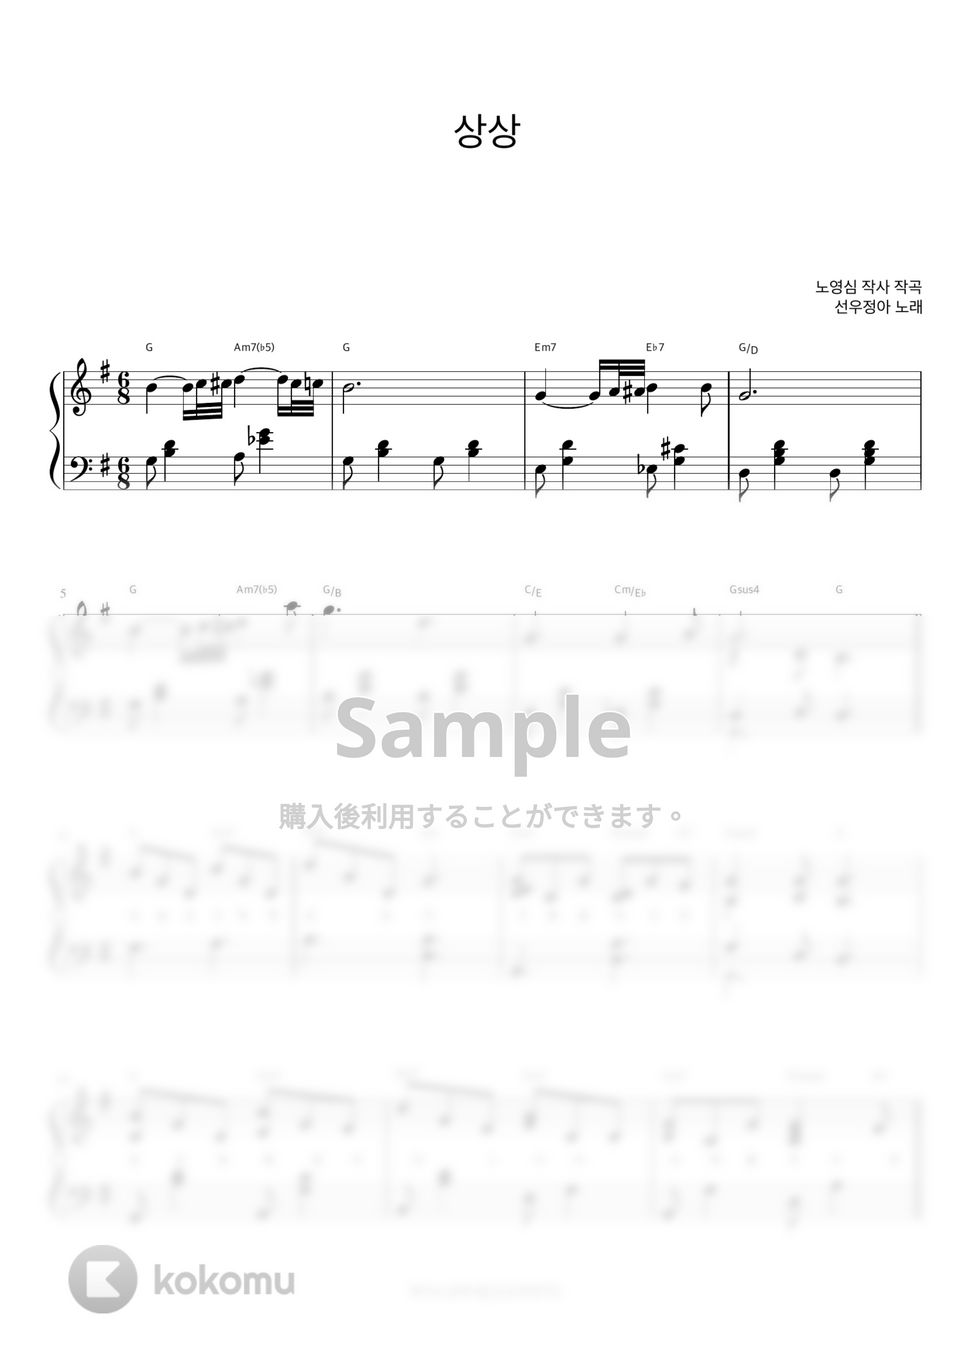 선우정아 - 상상 (이상한 변호사 우영우 OST, 반주악보) by 피아노정류장